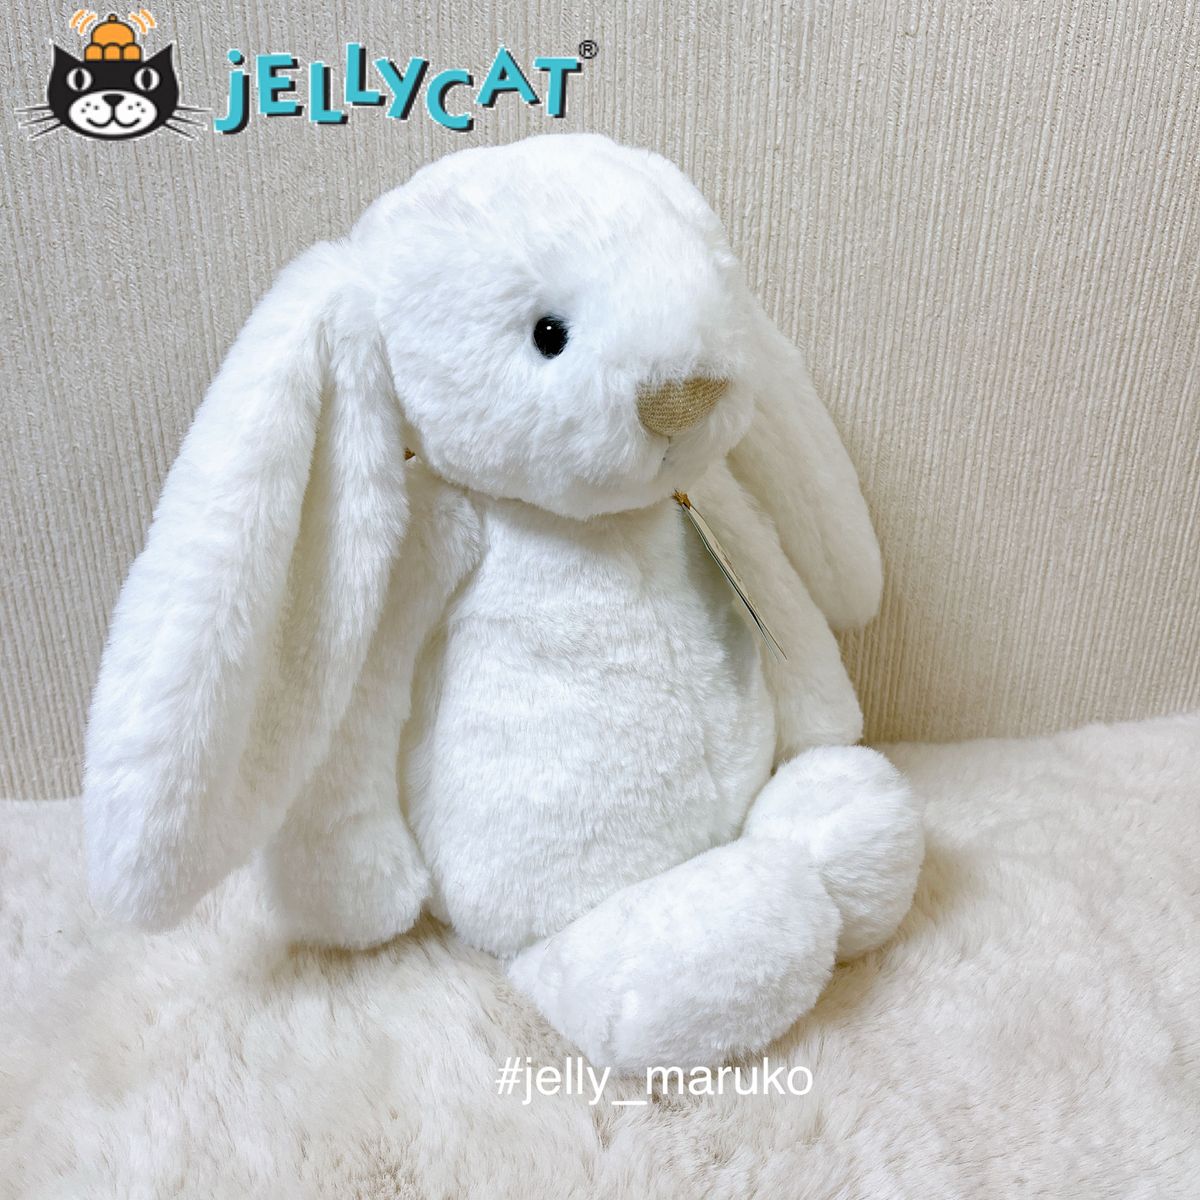 【新品】 うさぎ ウサギ jellycat ジェリーキャット ぬいぐるみ